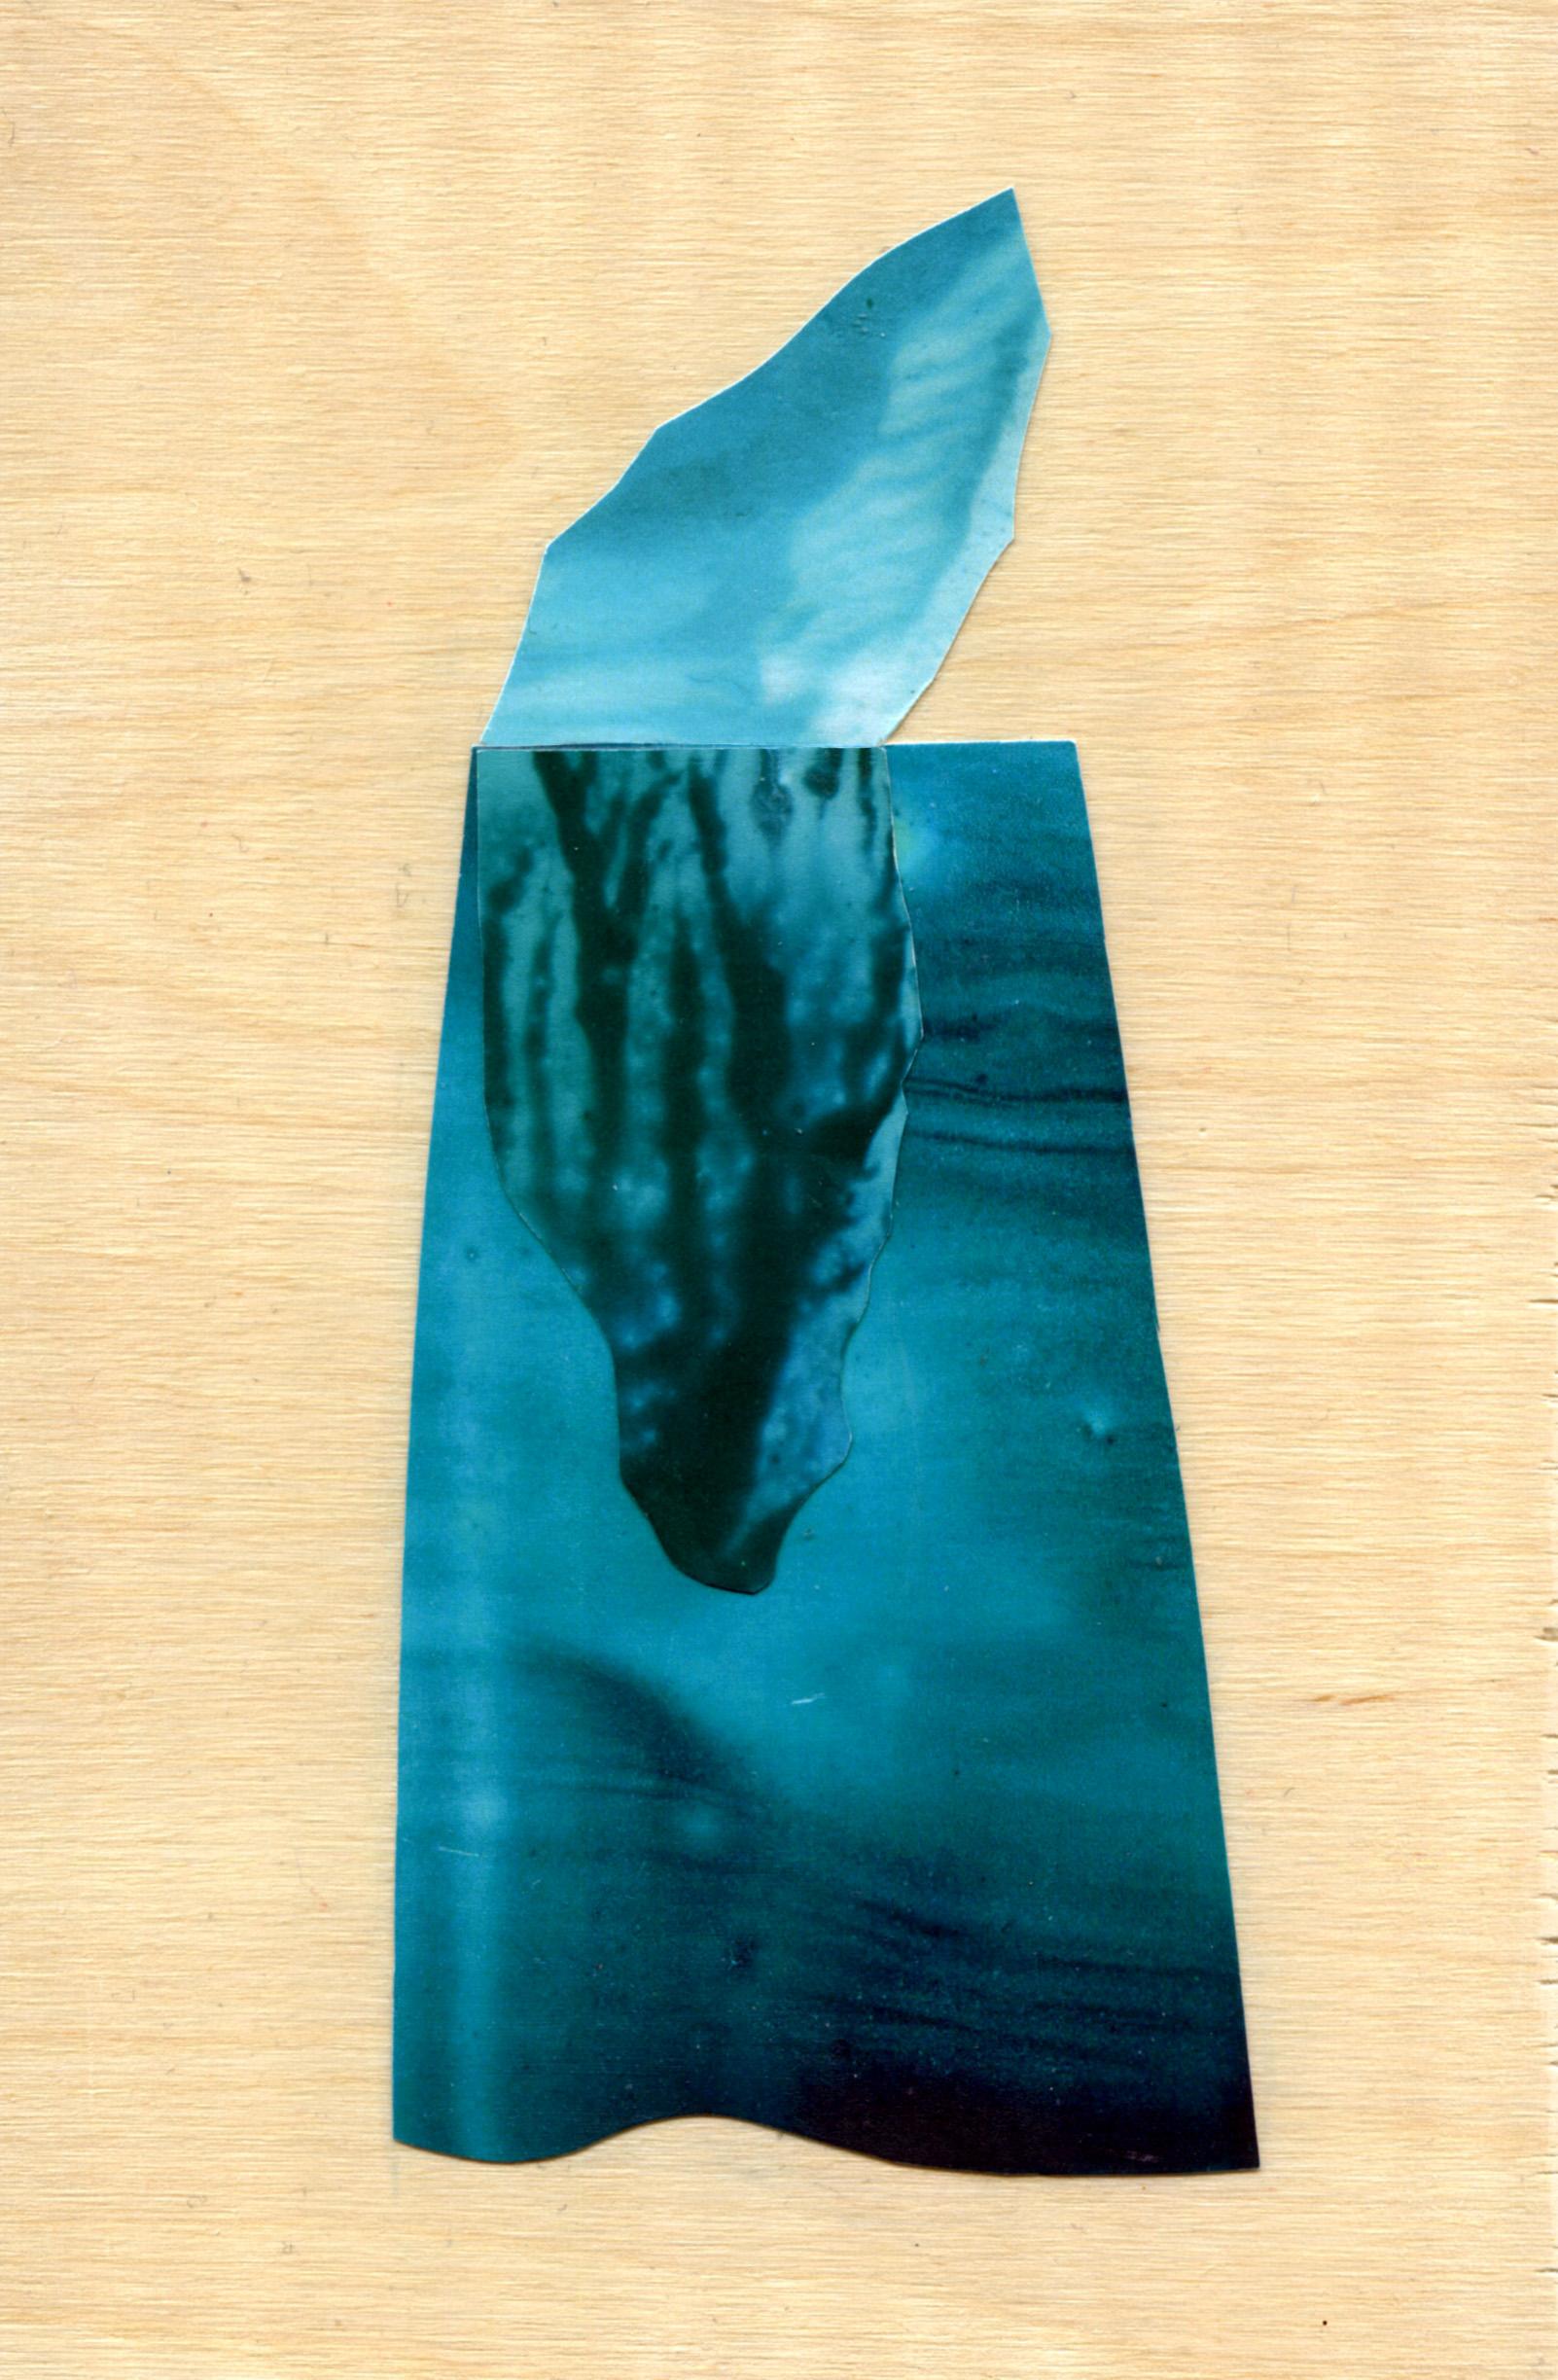 Iceberg 12 - Mixed Media Art by Sarah Winkler